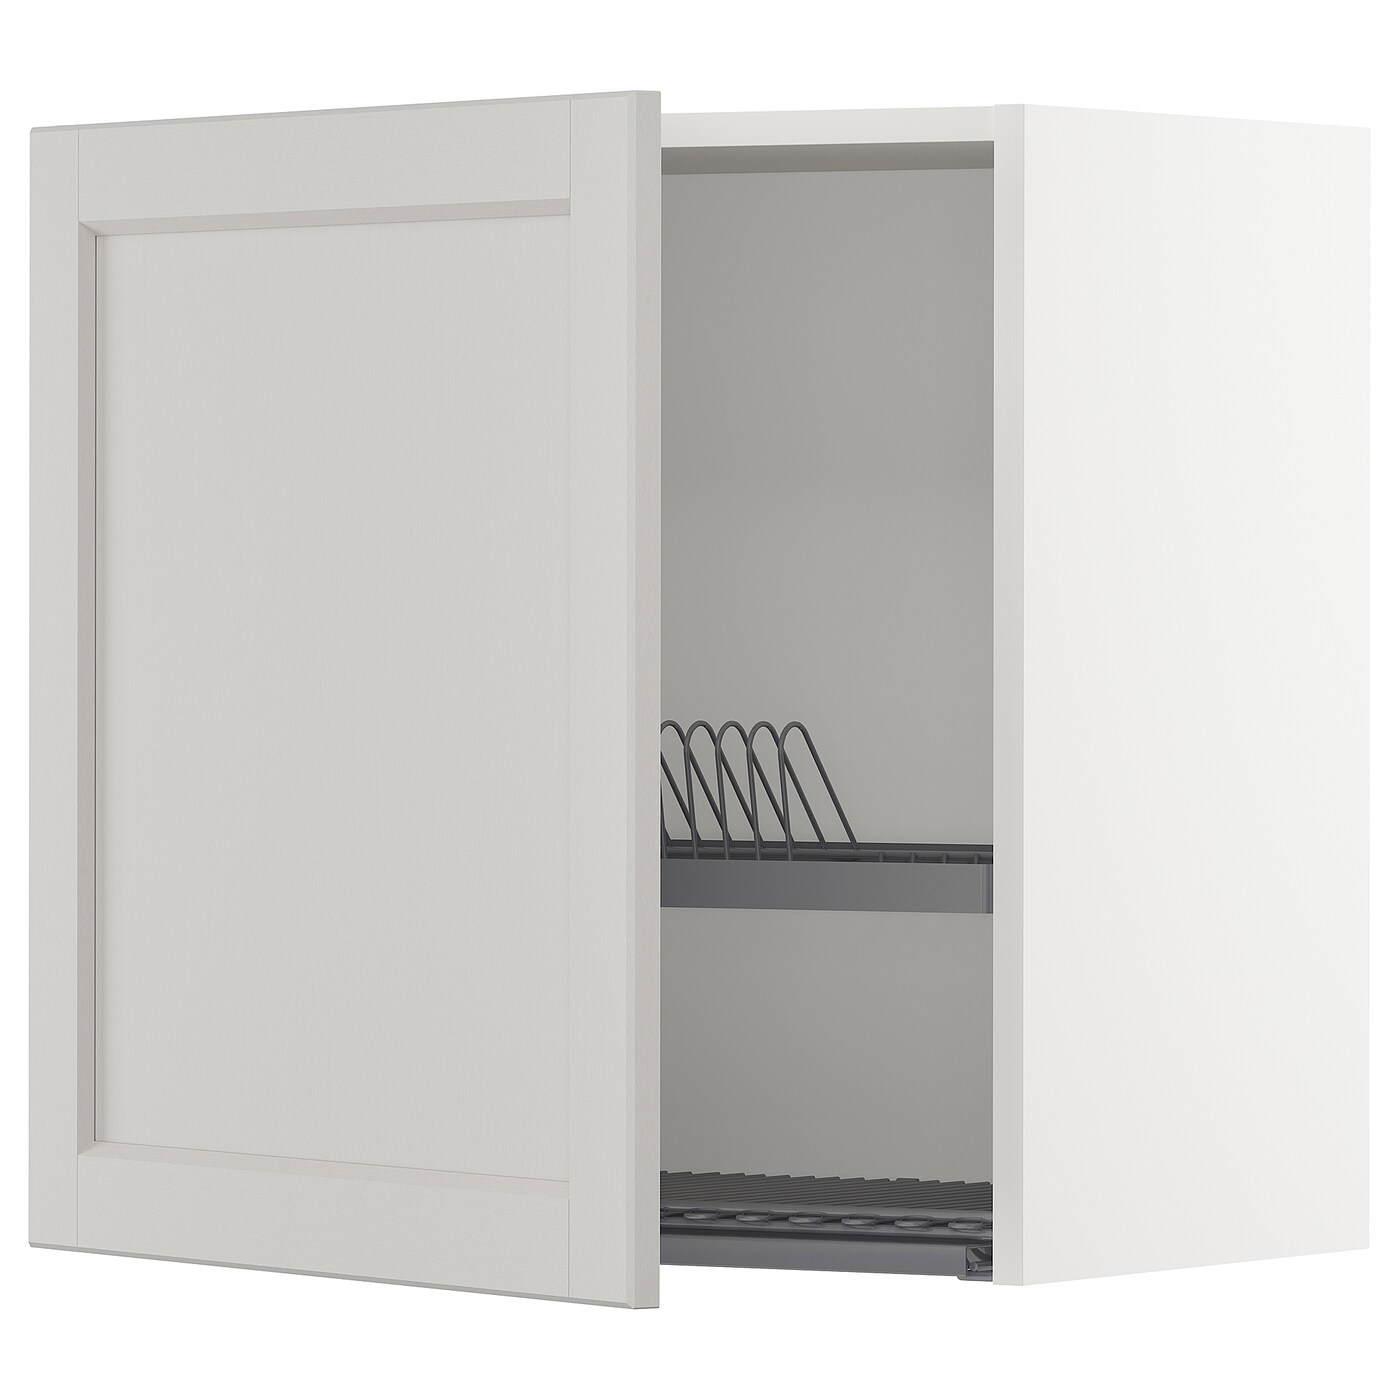 Навесной шкаф с сушилкой - METOD IKEA/ МЕТОД ИКЕА, 60х60 см, белый/светло-серый